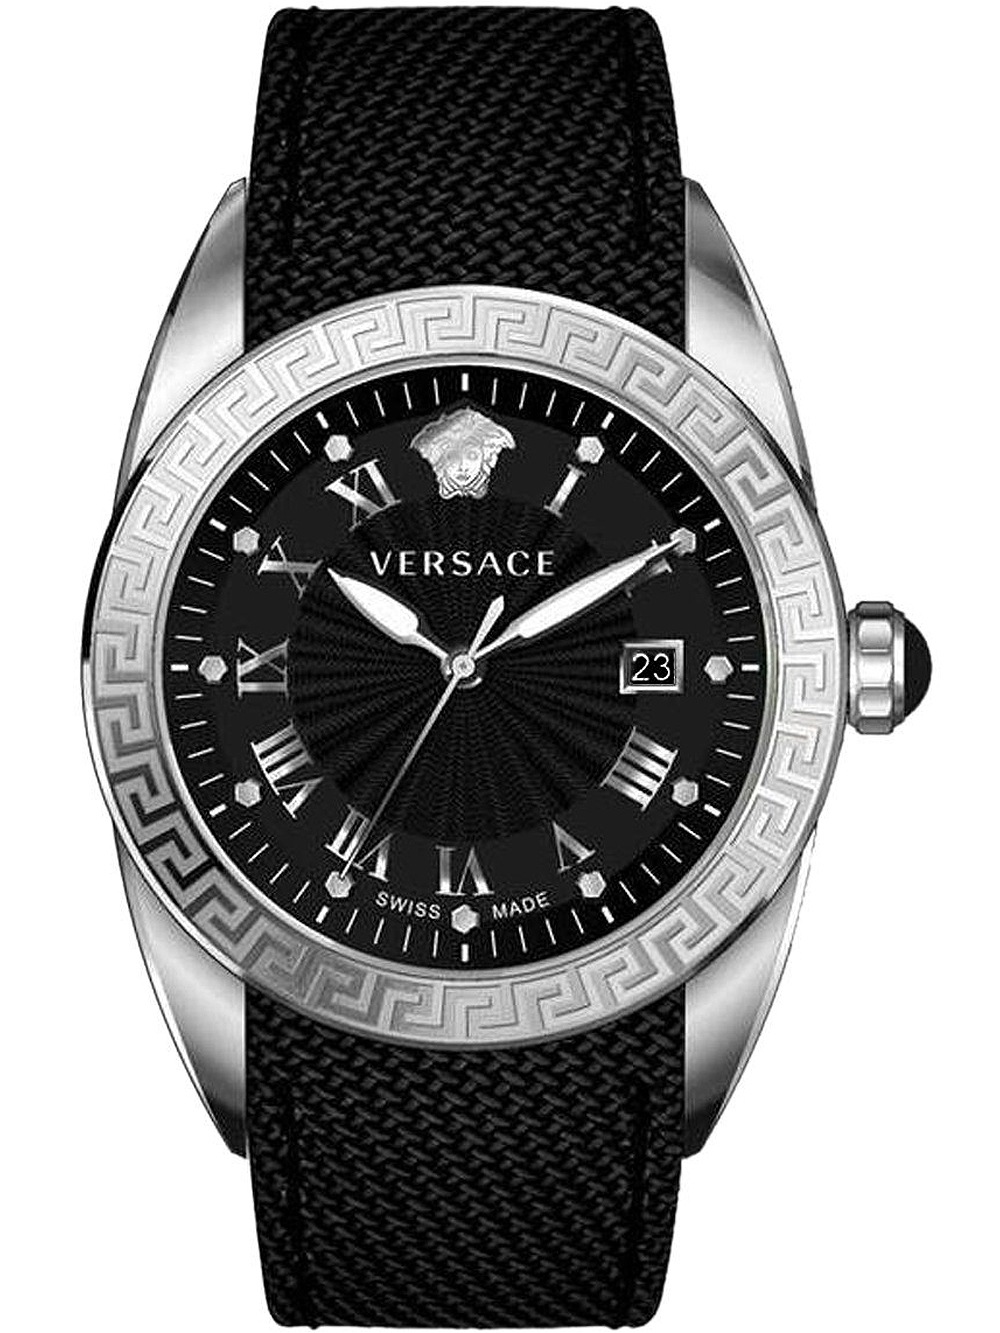 Pánské hodinky Versace VFE030013 V-Sport II